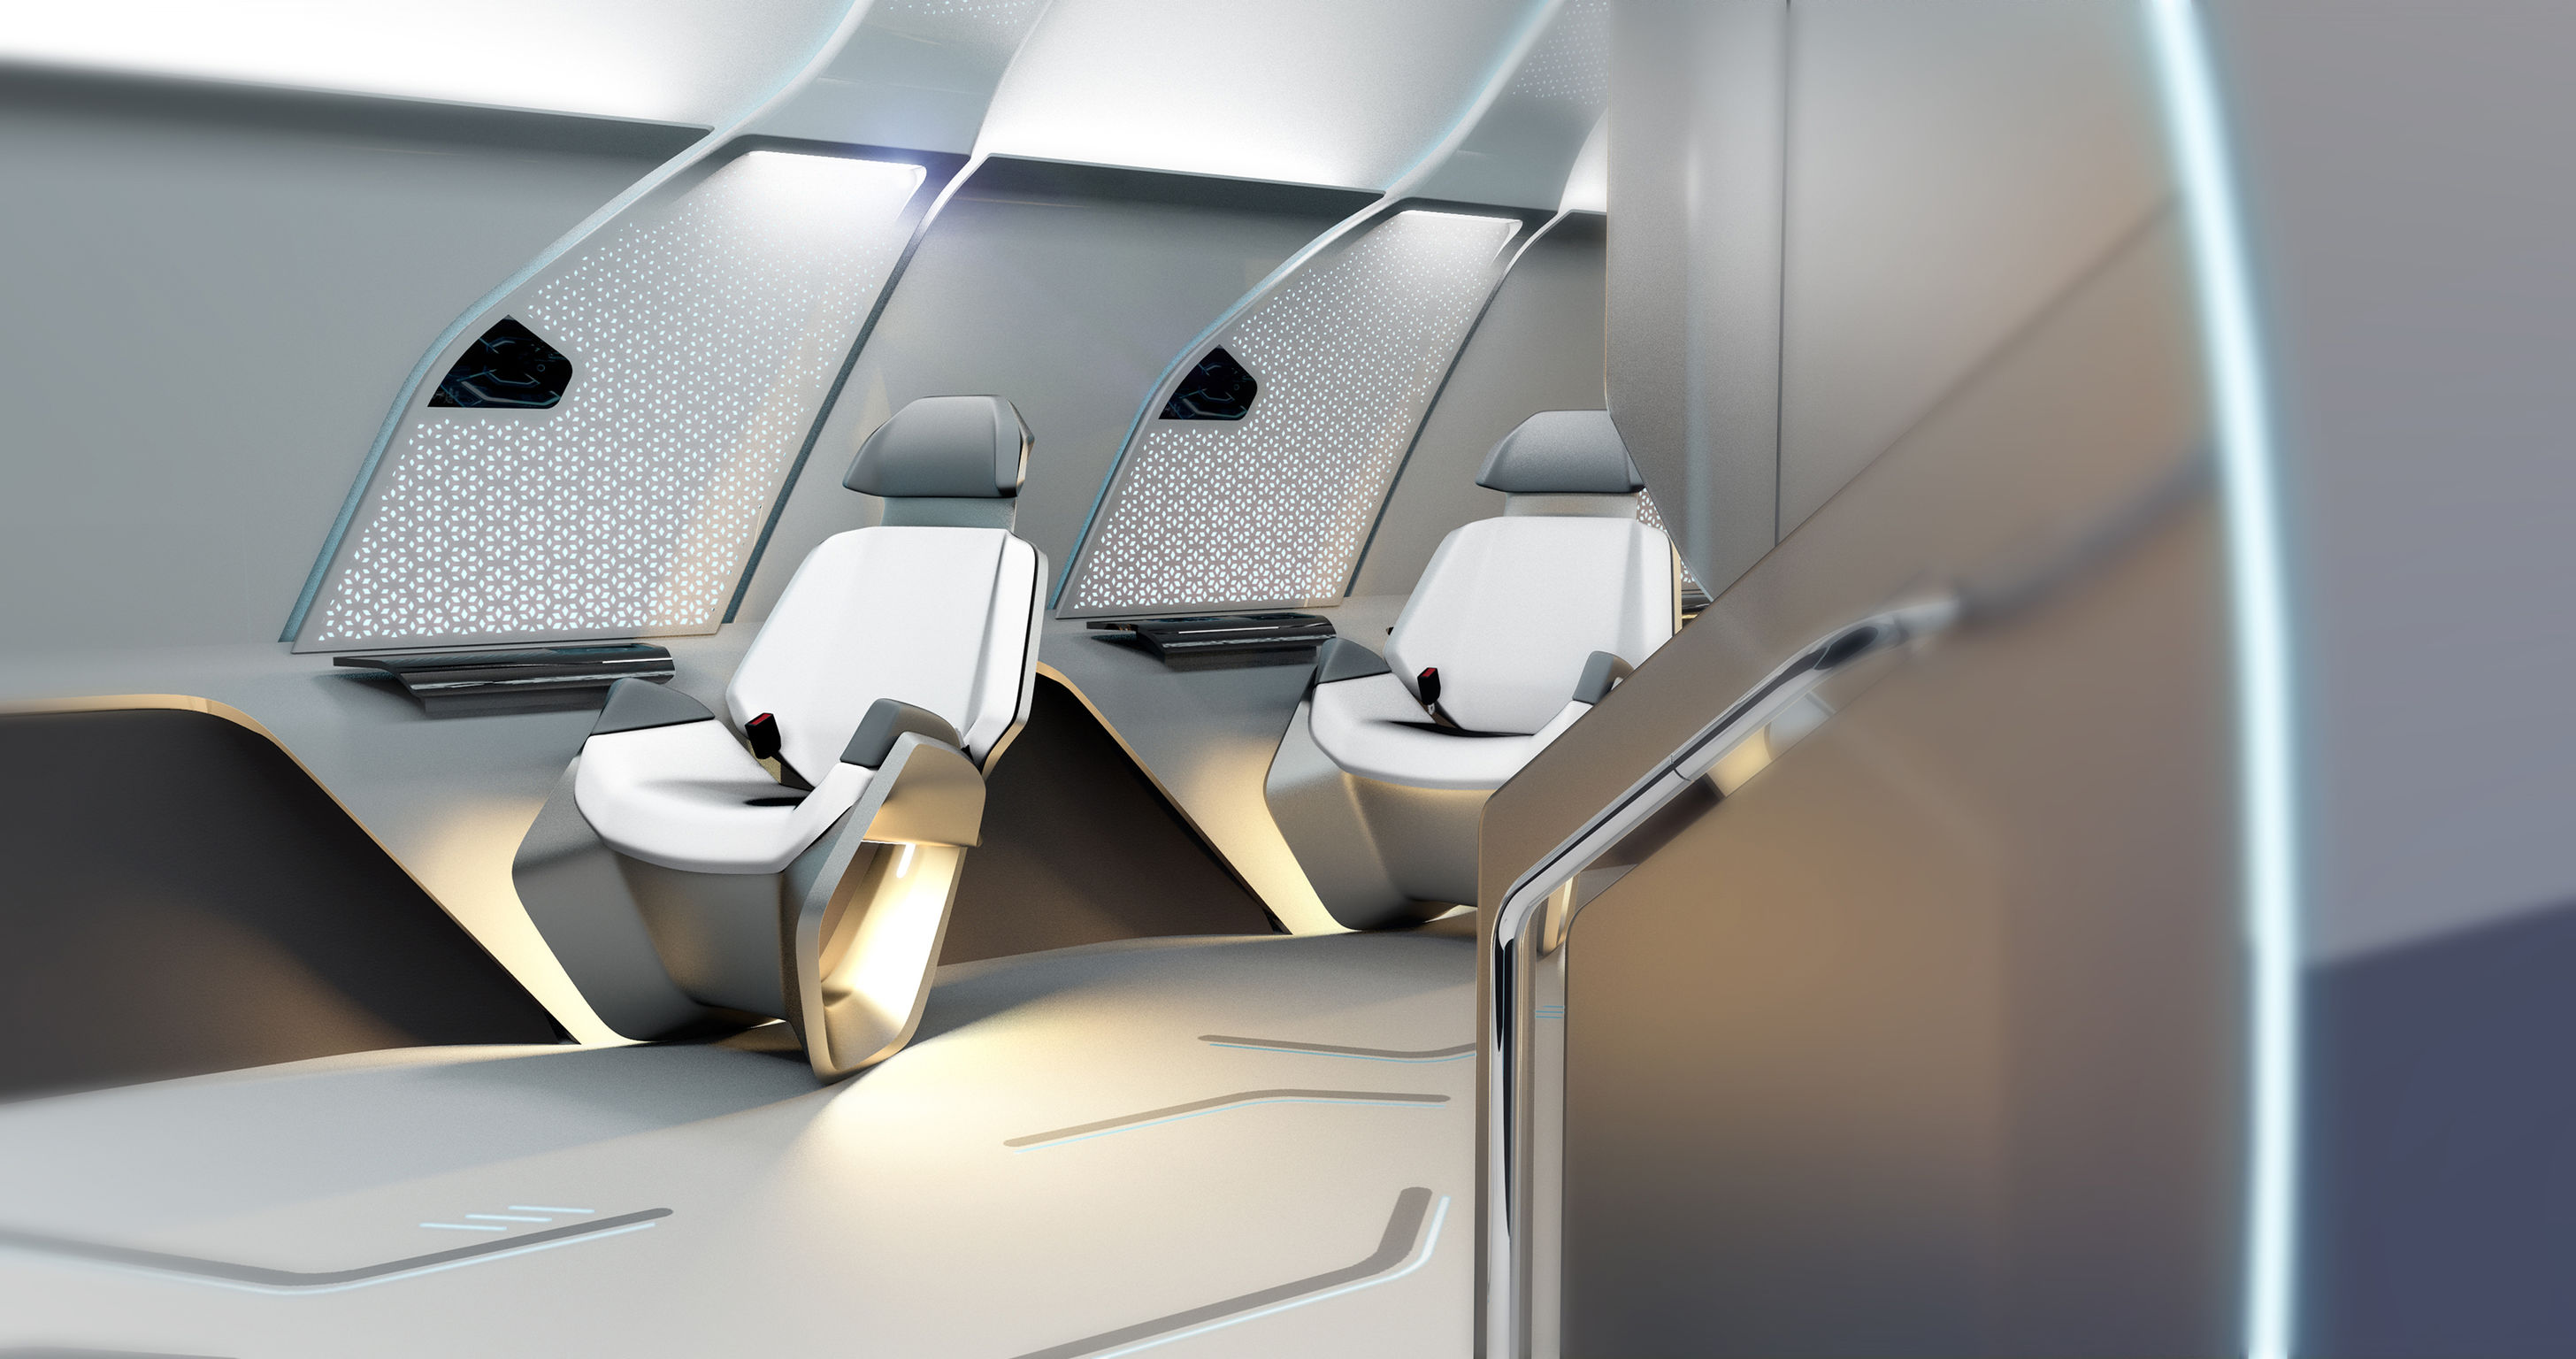 Virgin Hyperloop One Prototype Interior Design If World